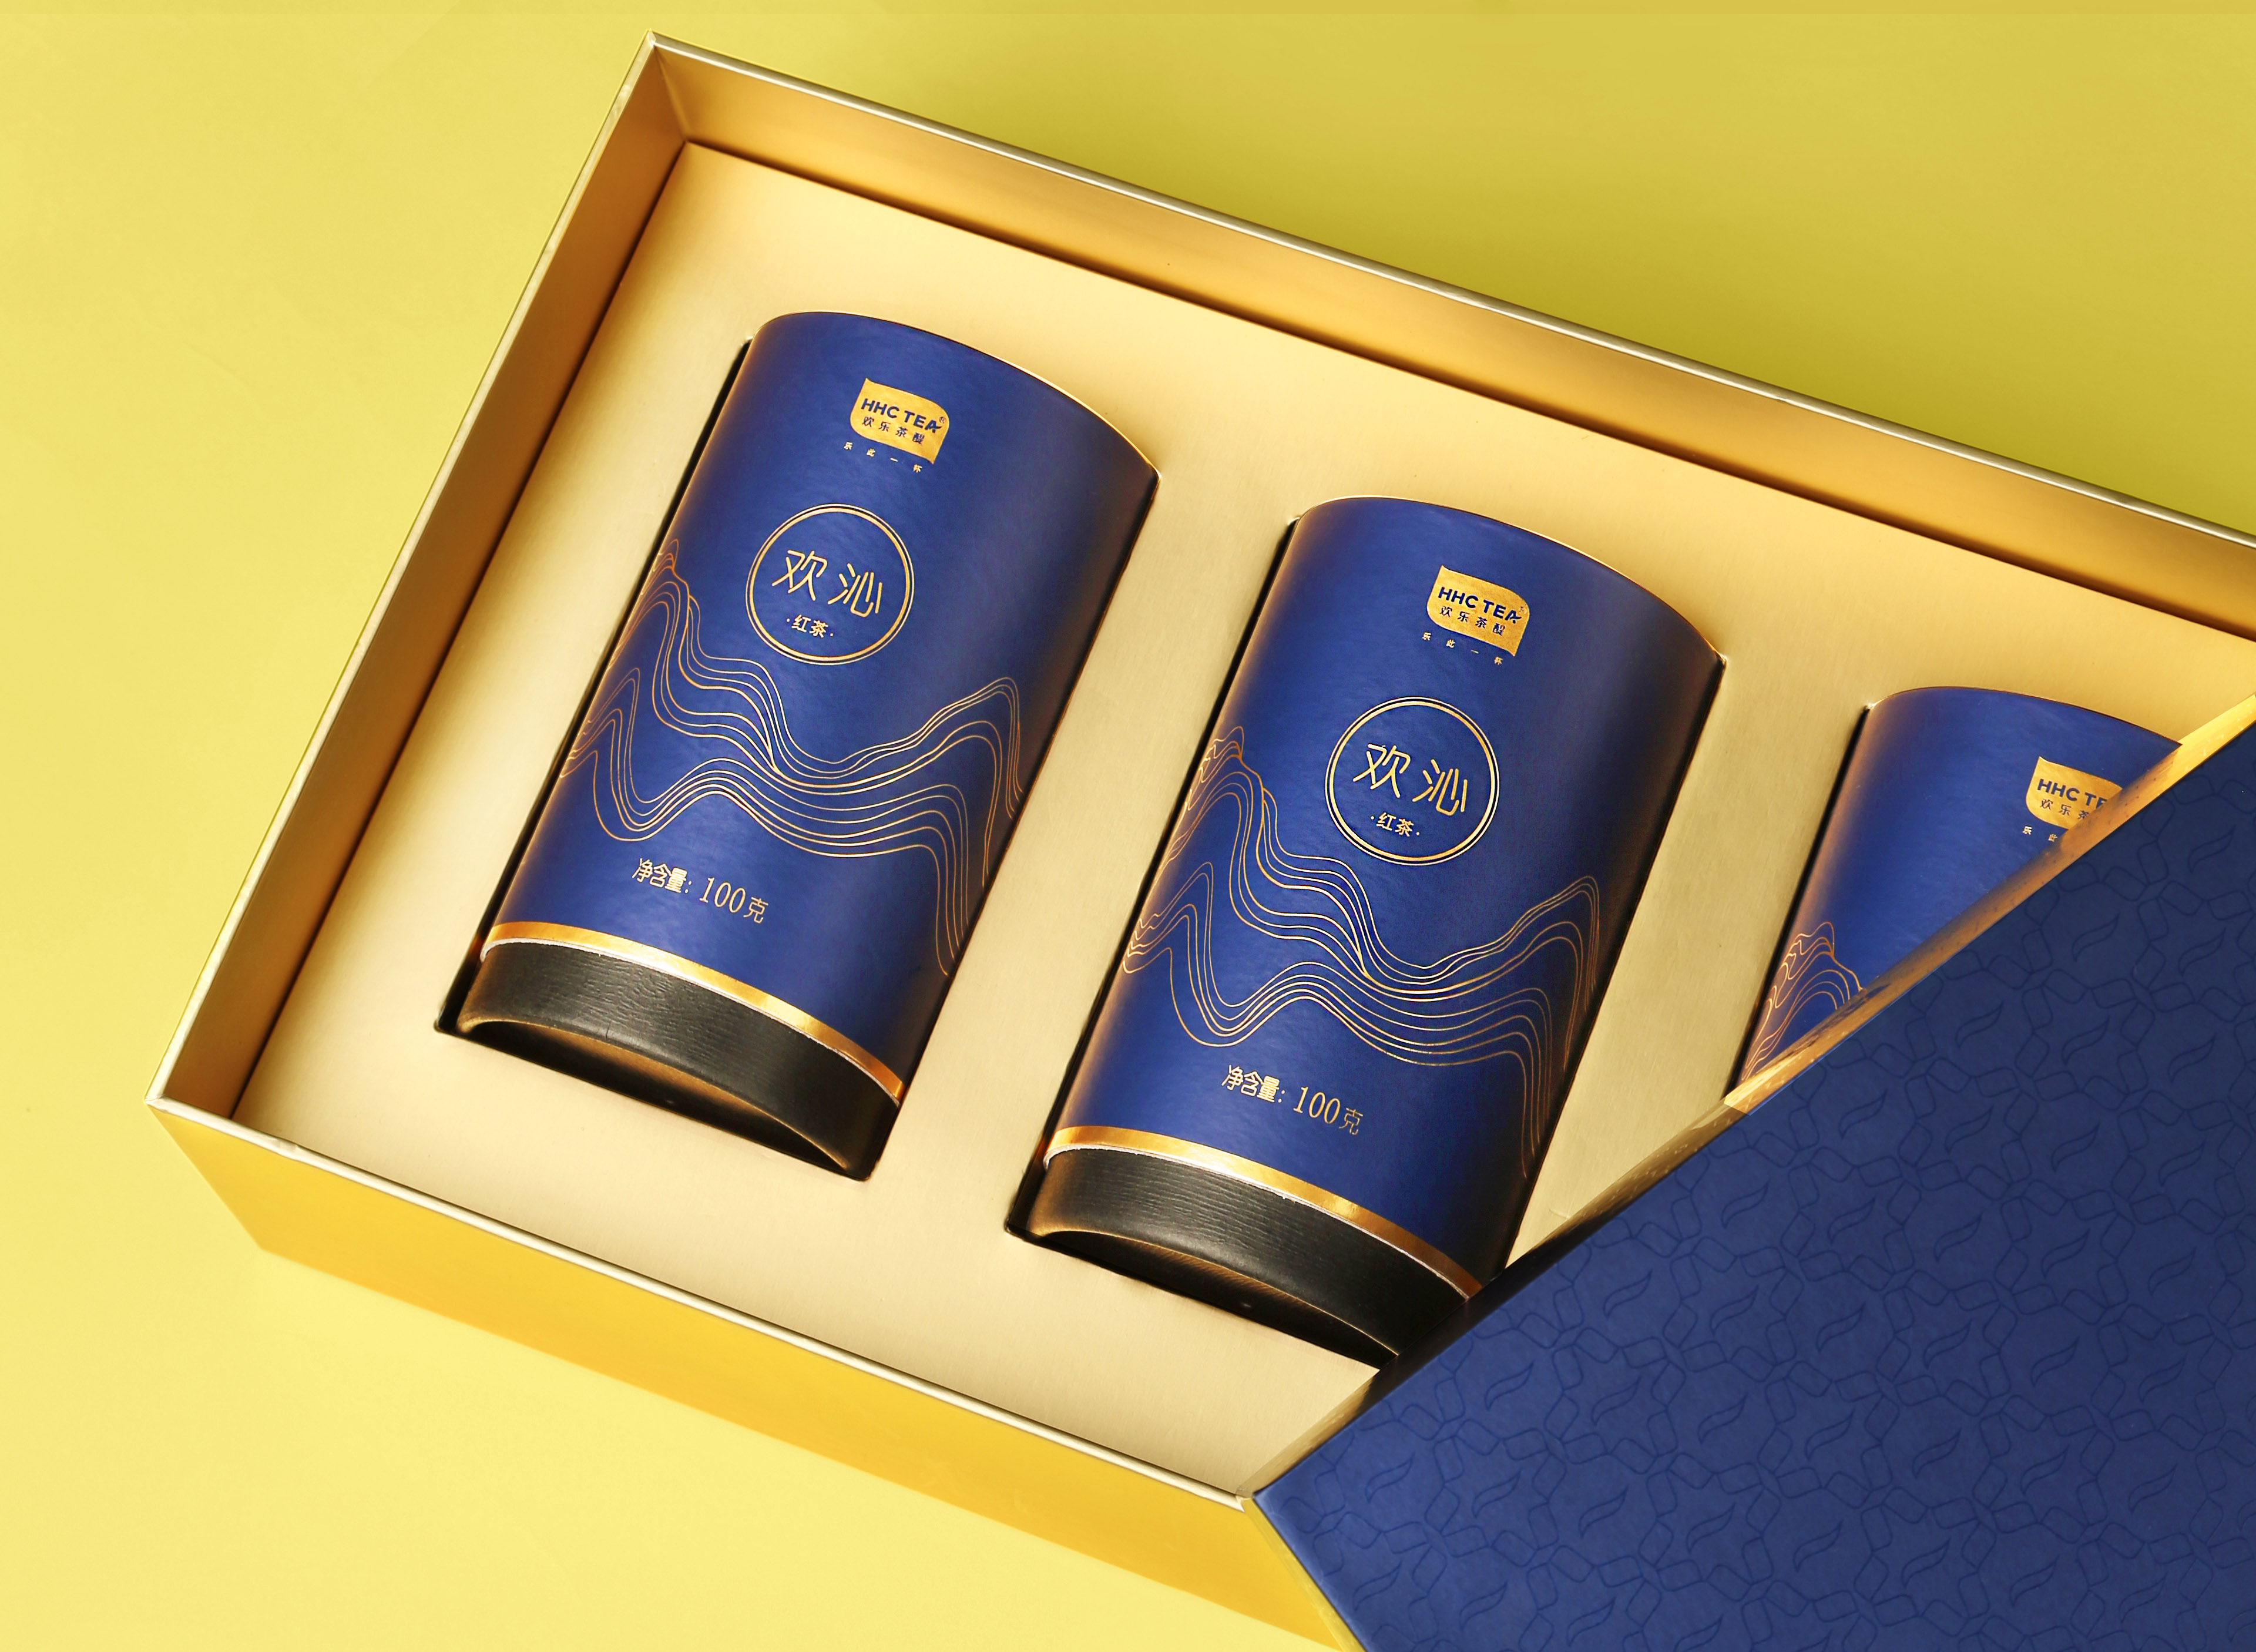 「欢沁」红茶新品上市 | 欢乐时刻与你共享